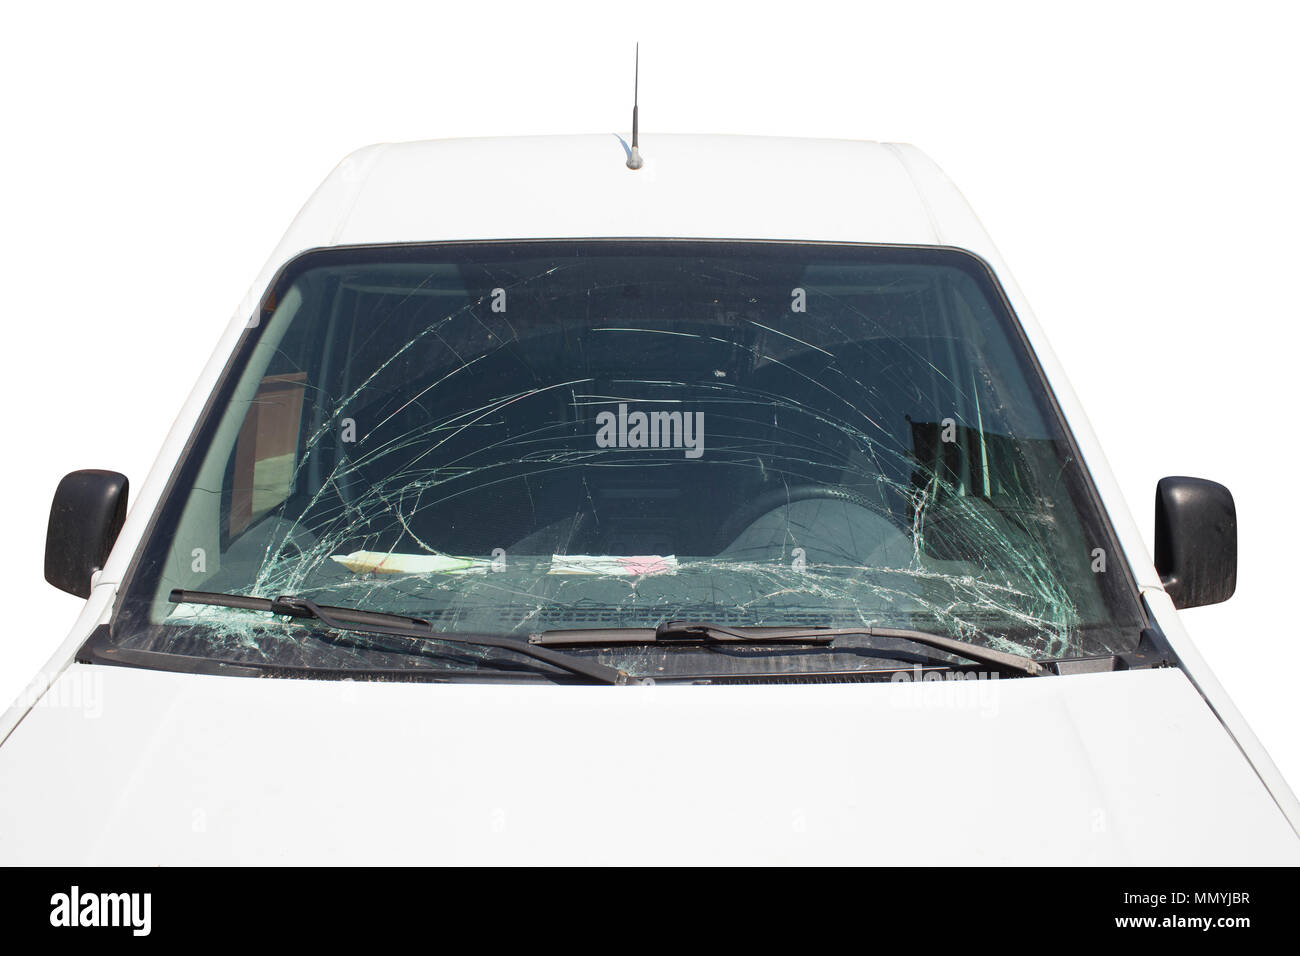 Car broken windscreen -Fotos und -Bildmaterial in hoher Auflösung - Seite 3  - Alamy